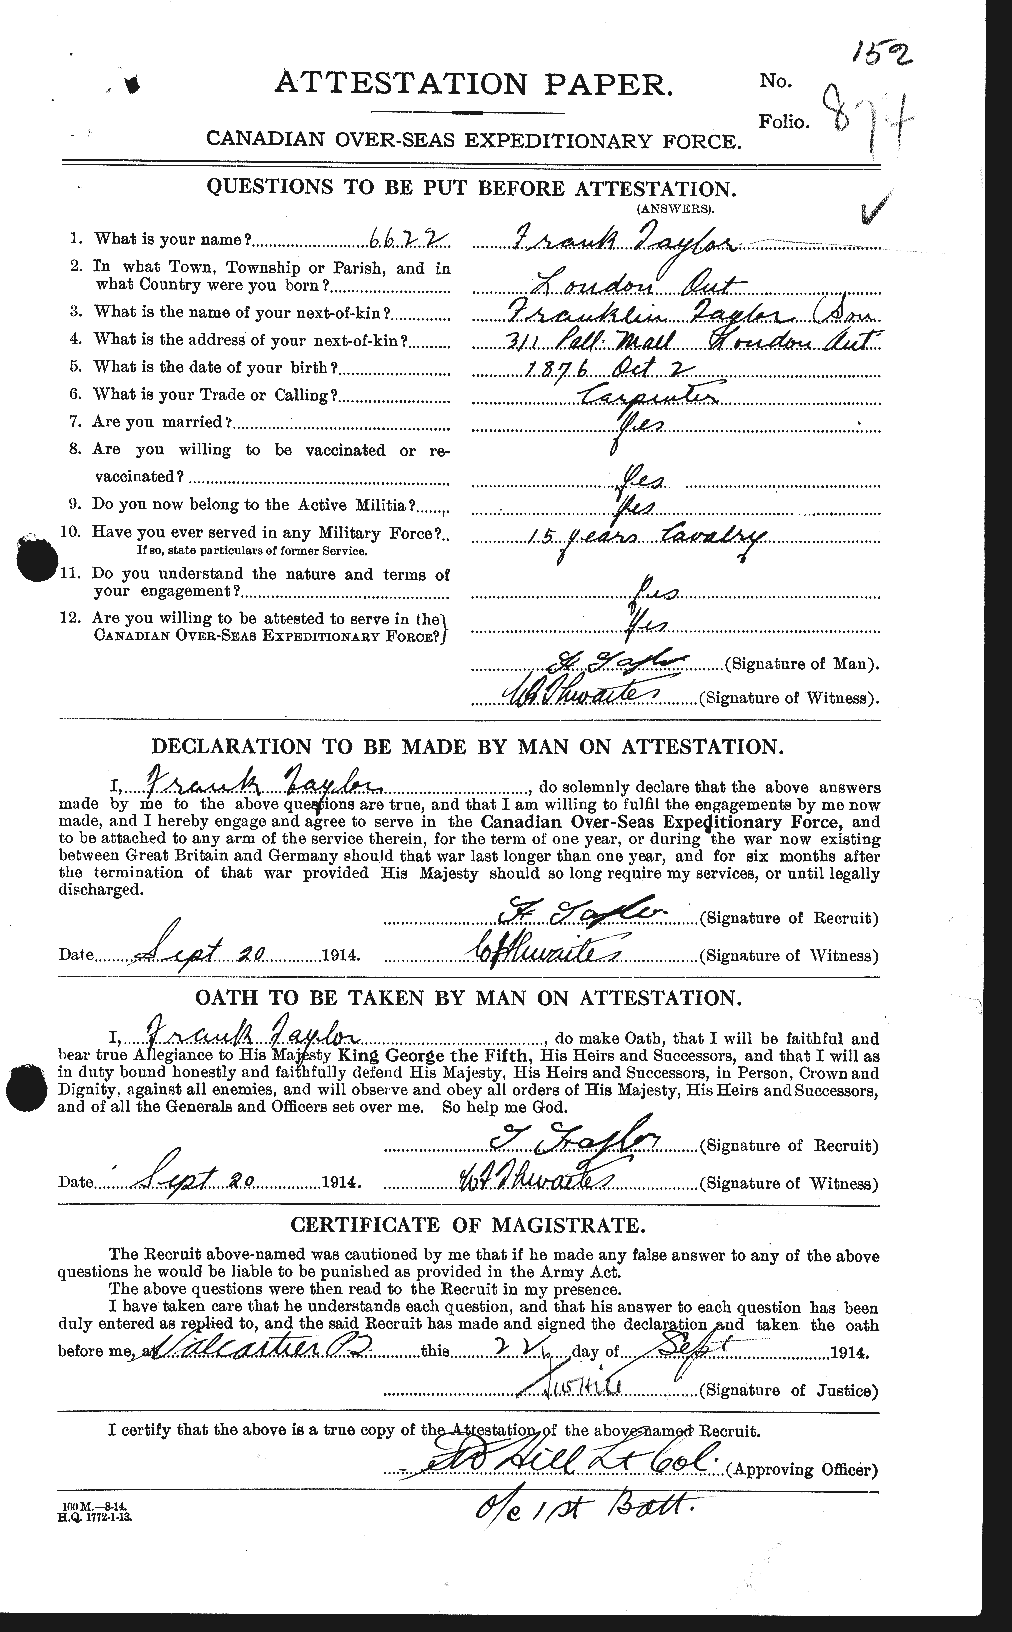 Dossiers du Personnel de la Première Guerre mondiale - CEC 625691a